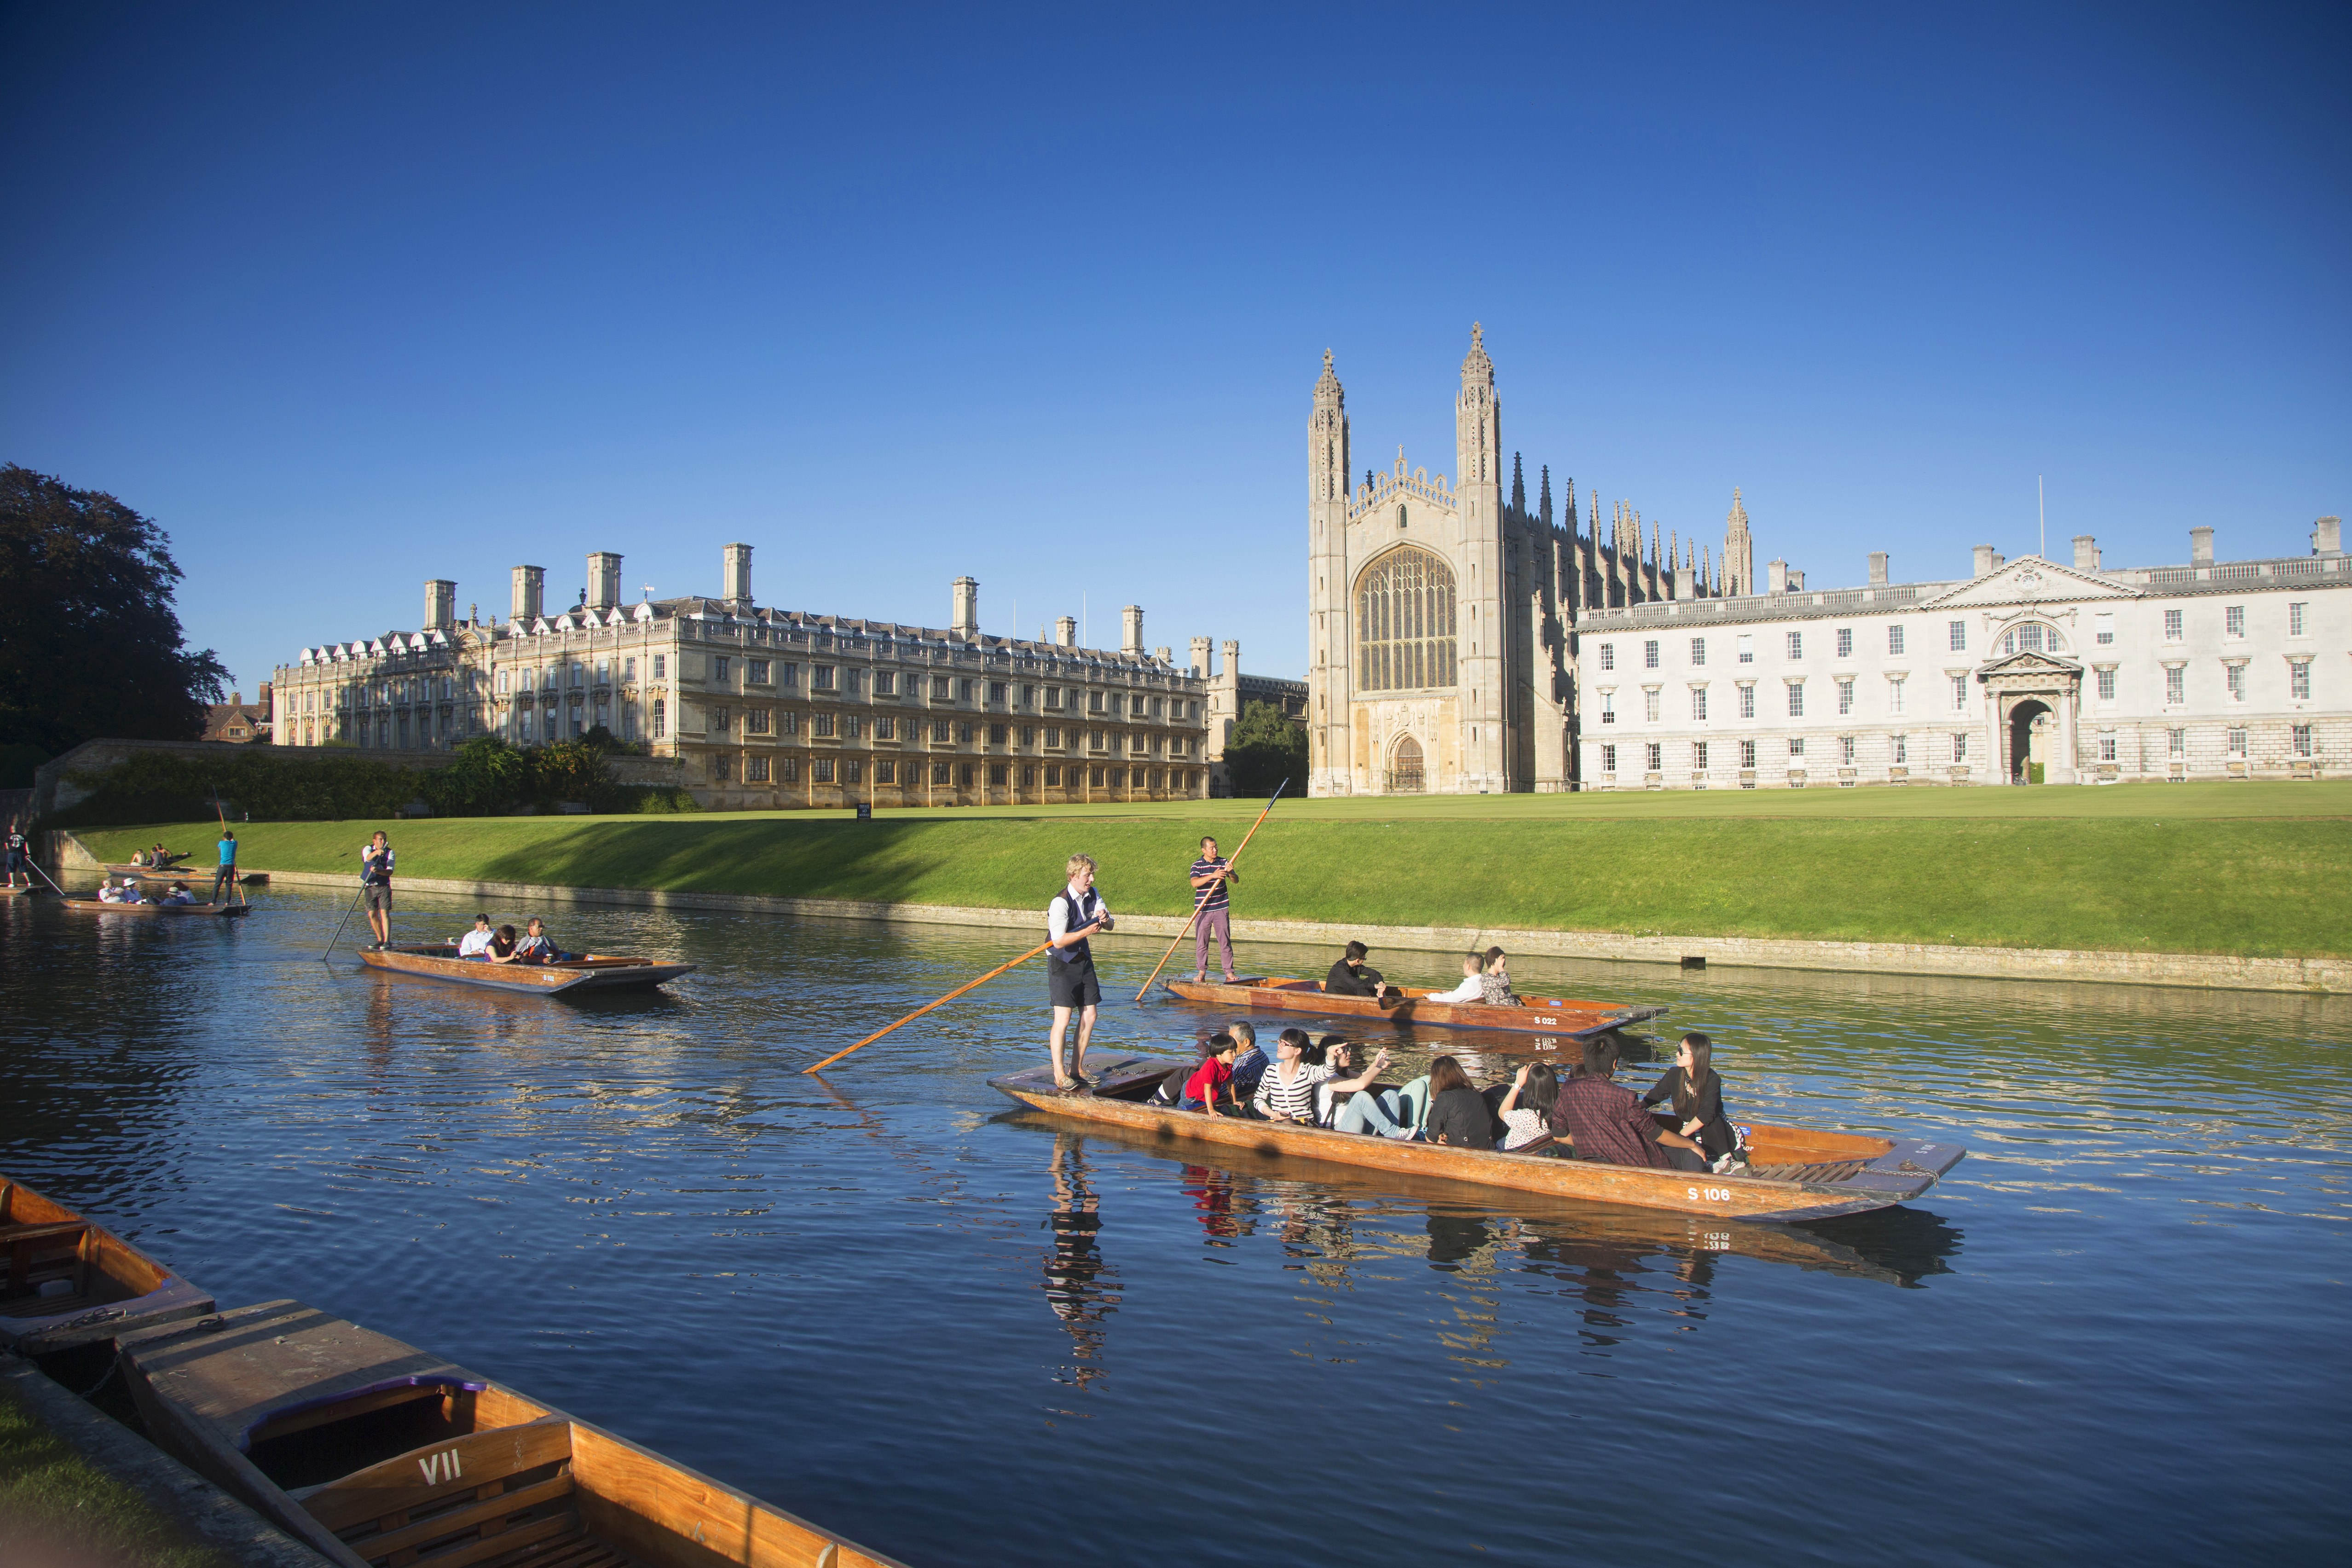 Cambridge history